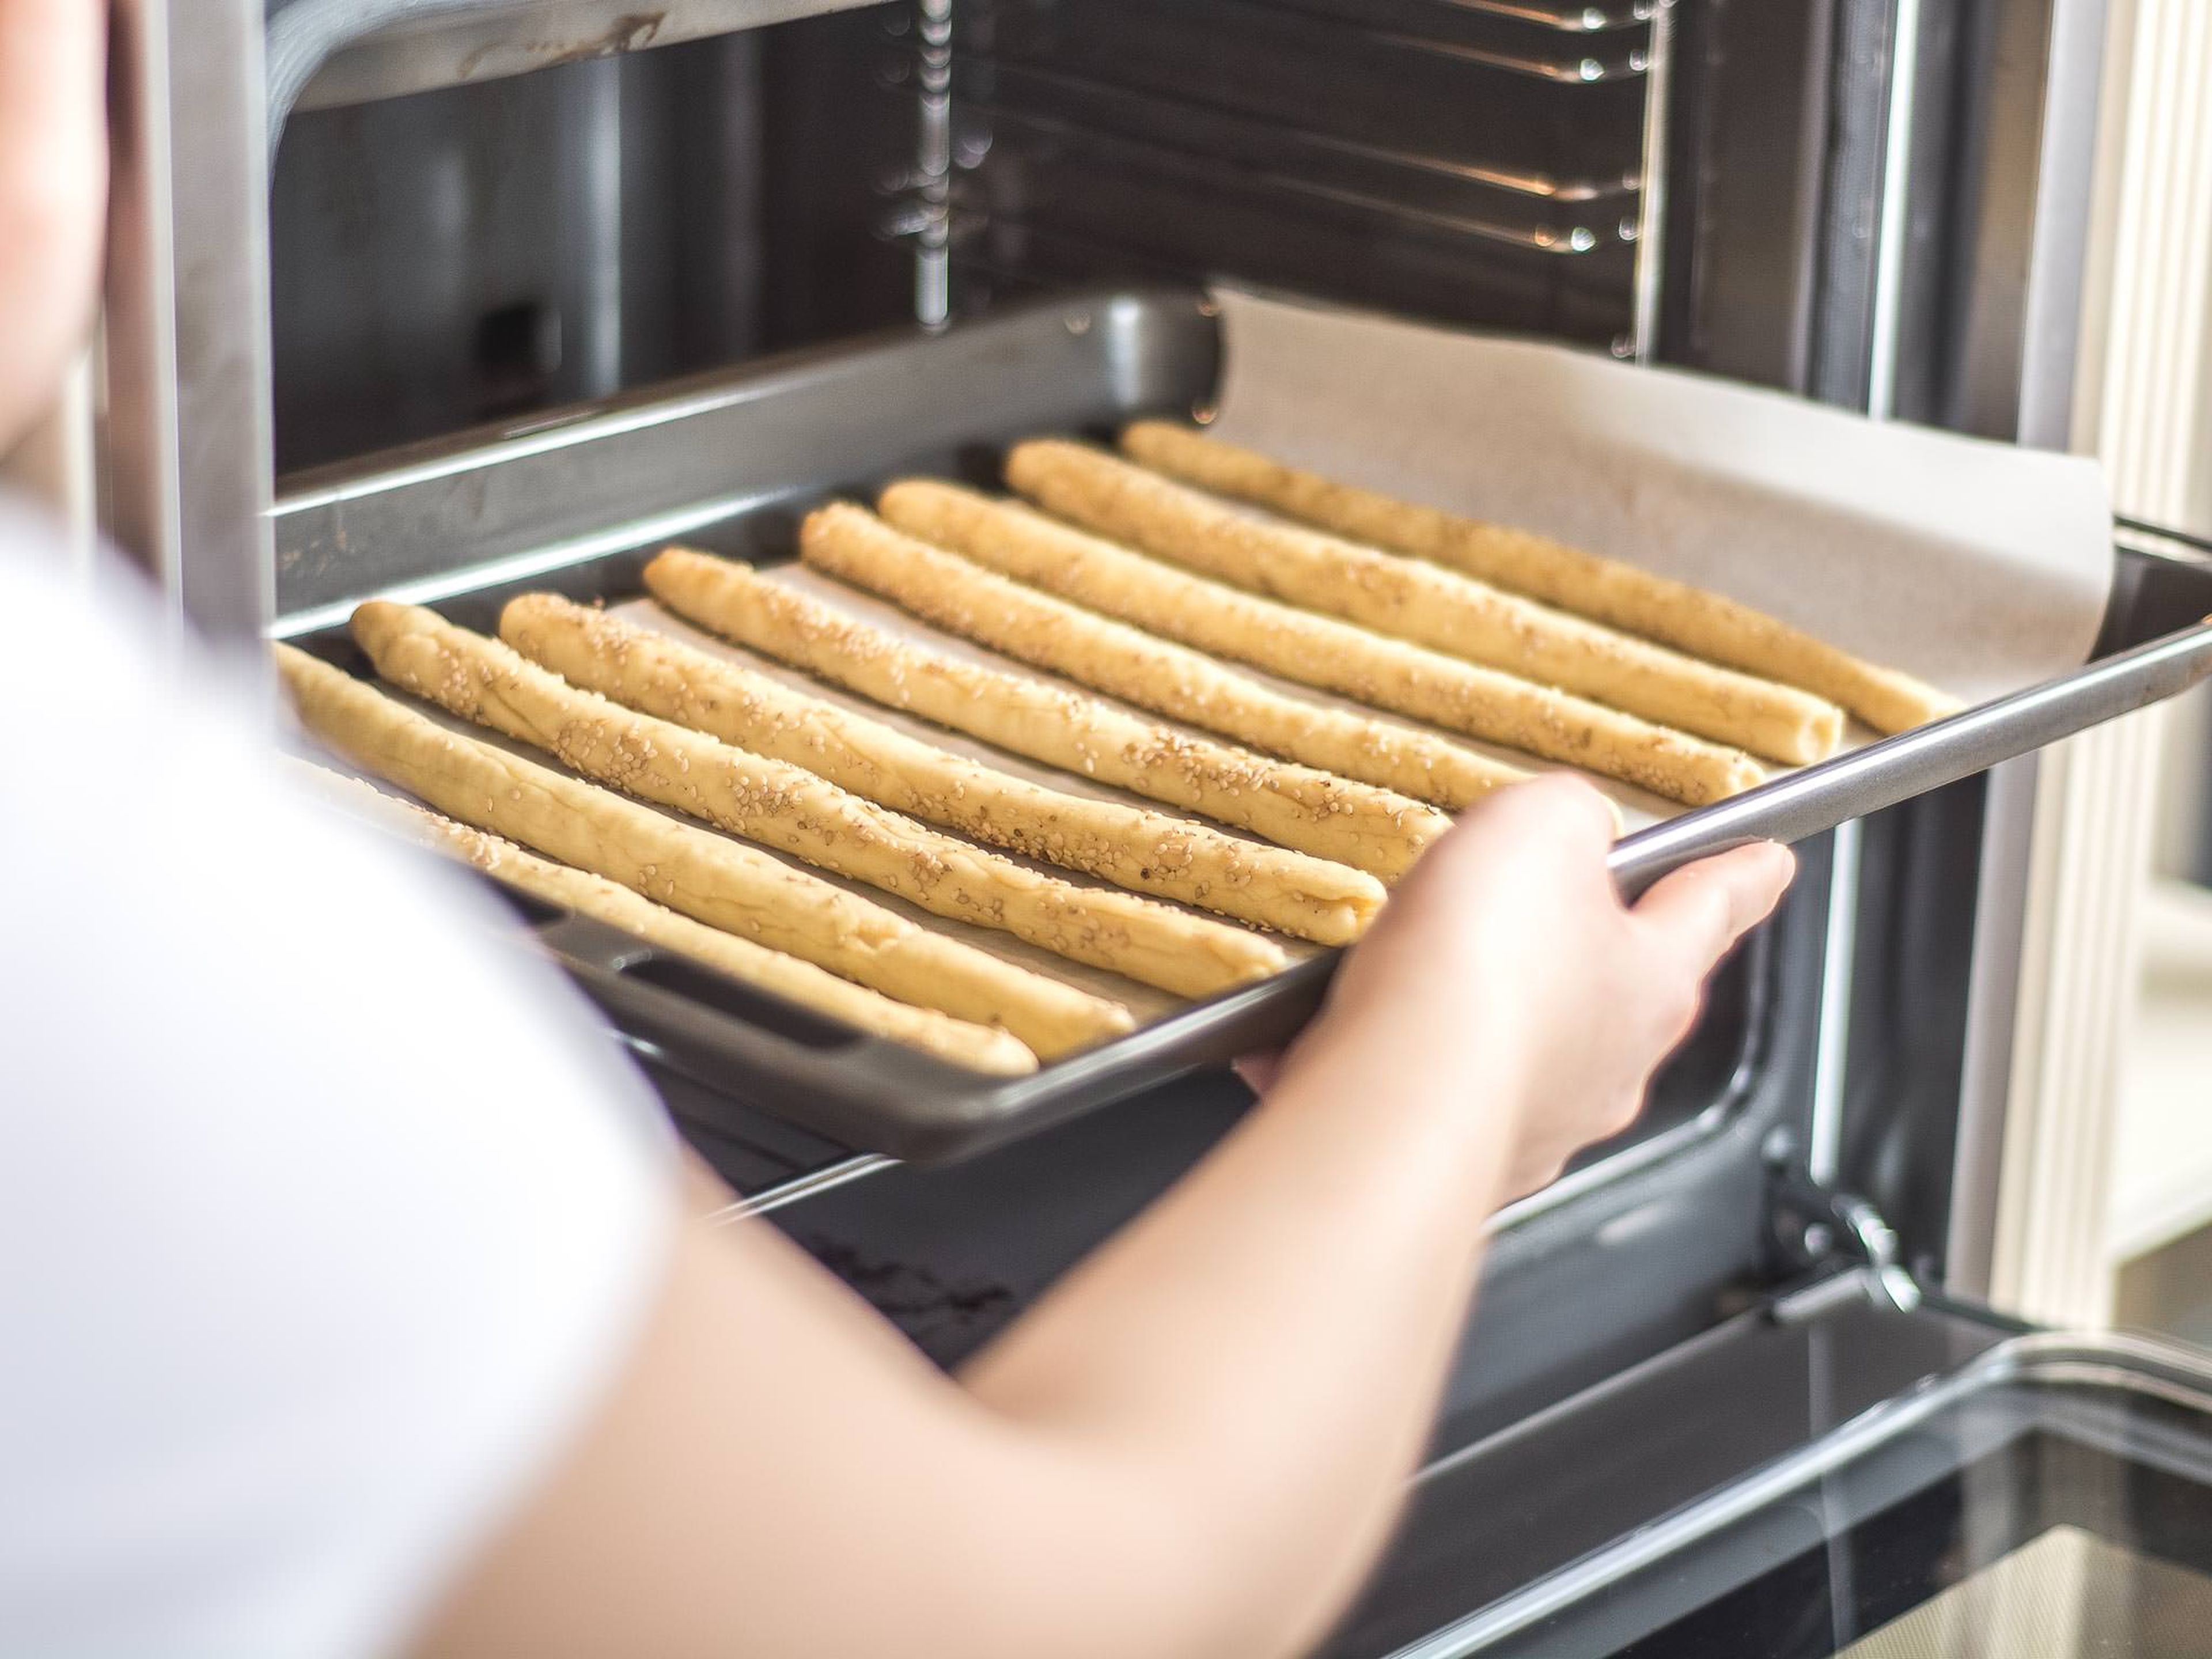 In der Zwischenzeit Backofen auf 200°C vorheizen. Anschließend die Grissini im vorgeheizten Ofen ca. 10 Min. goldgelb backen. Vor dem Genießen ca. 10 Min. auskühlen lassen. Mit einer Auswahl an Dips servieren.